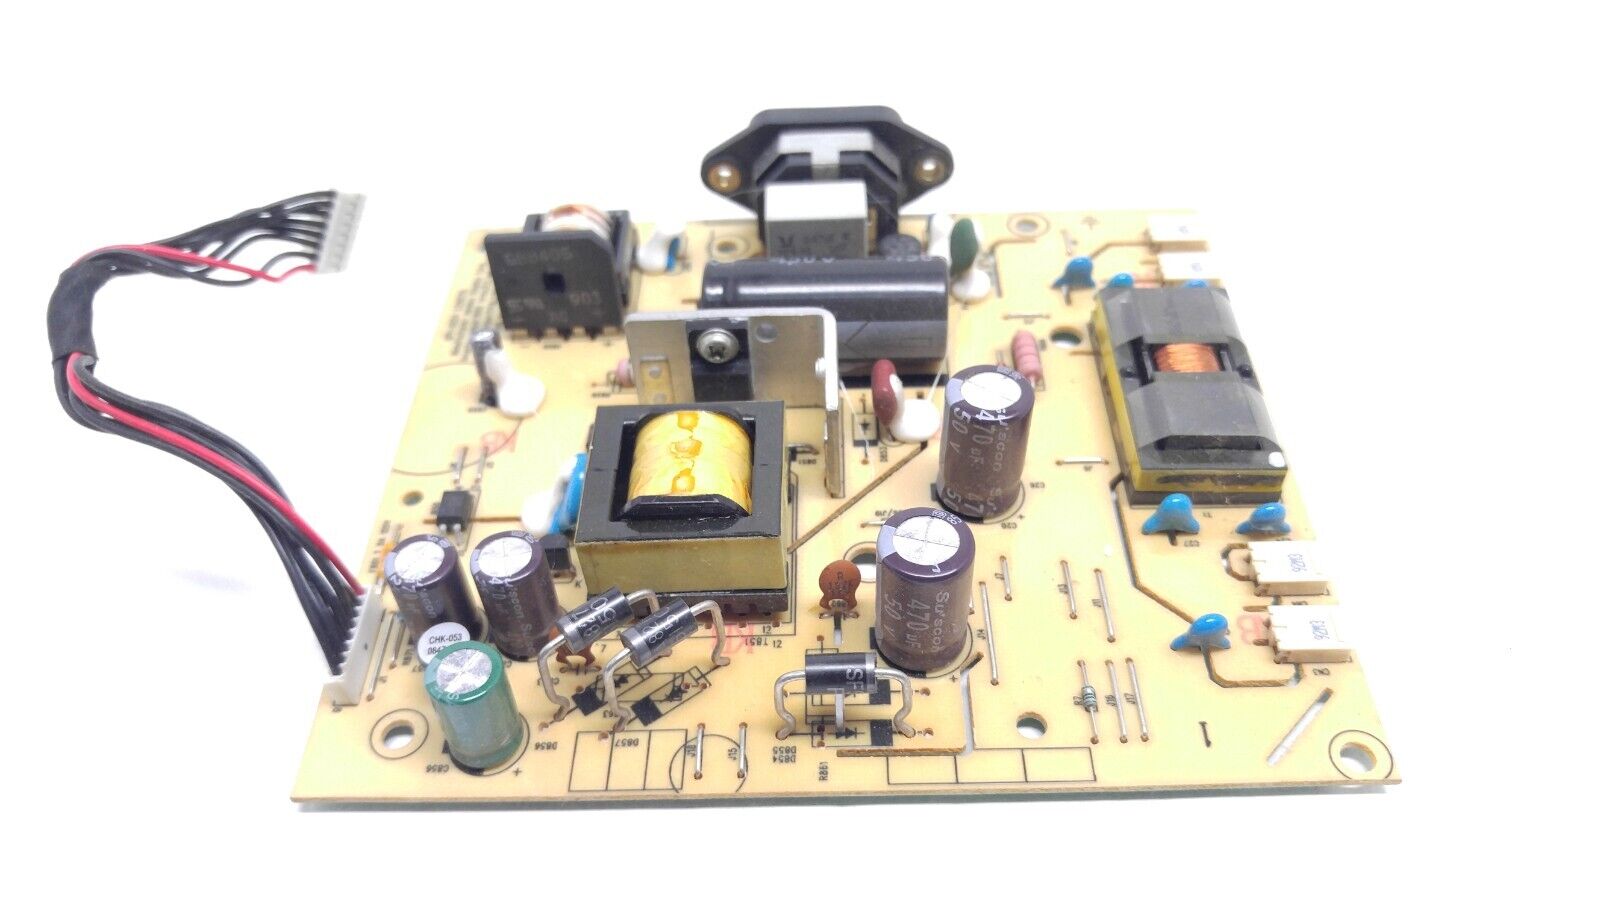 Dell E93938 power supply board for E1909Wf Monitors